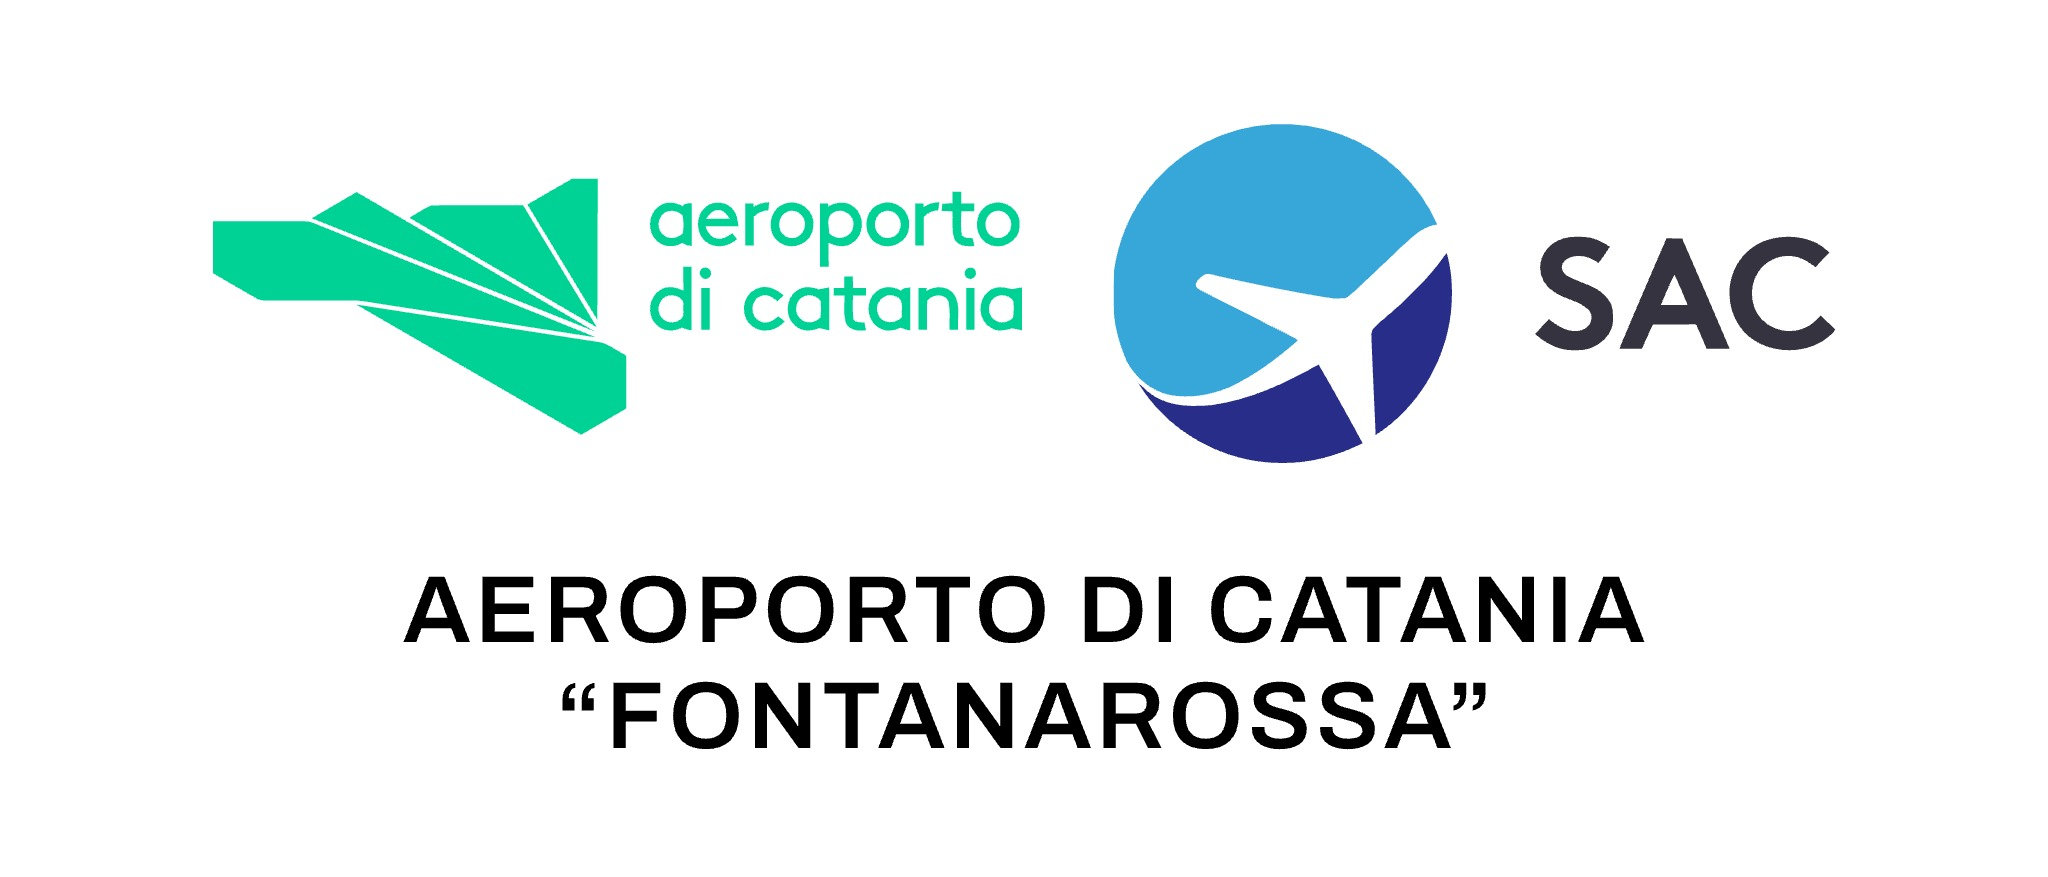 Corsi specifici - Aeroporto di Catania